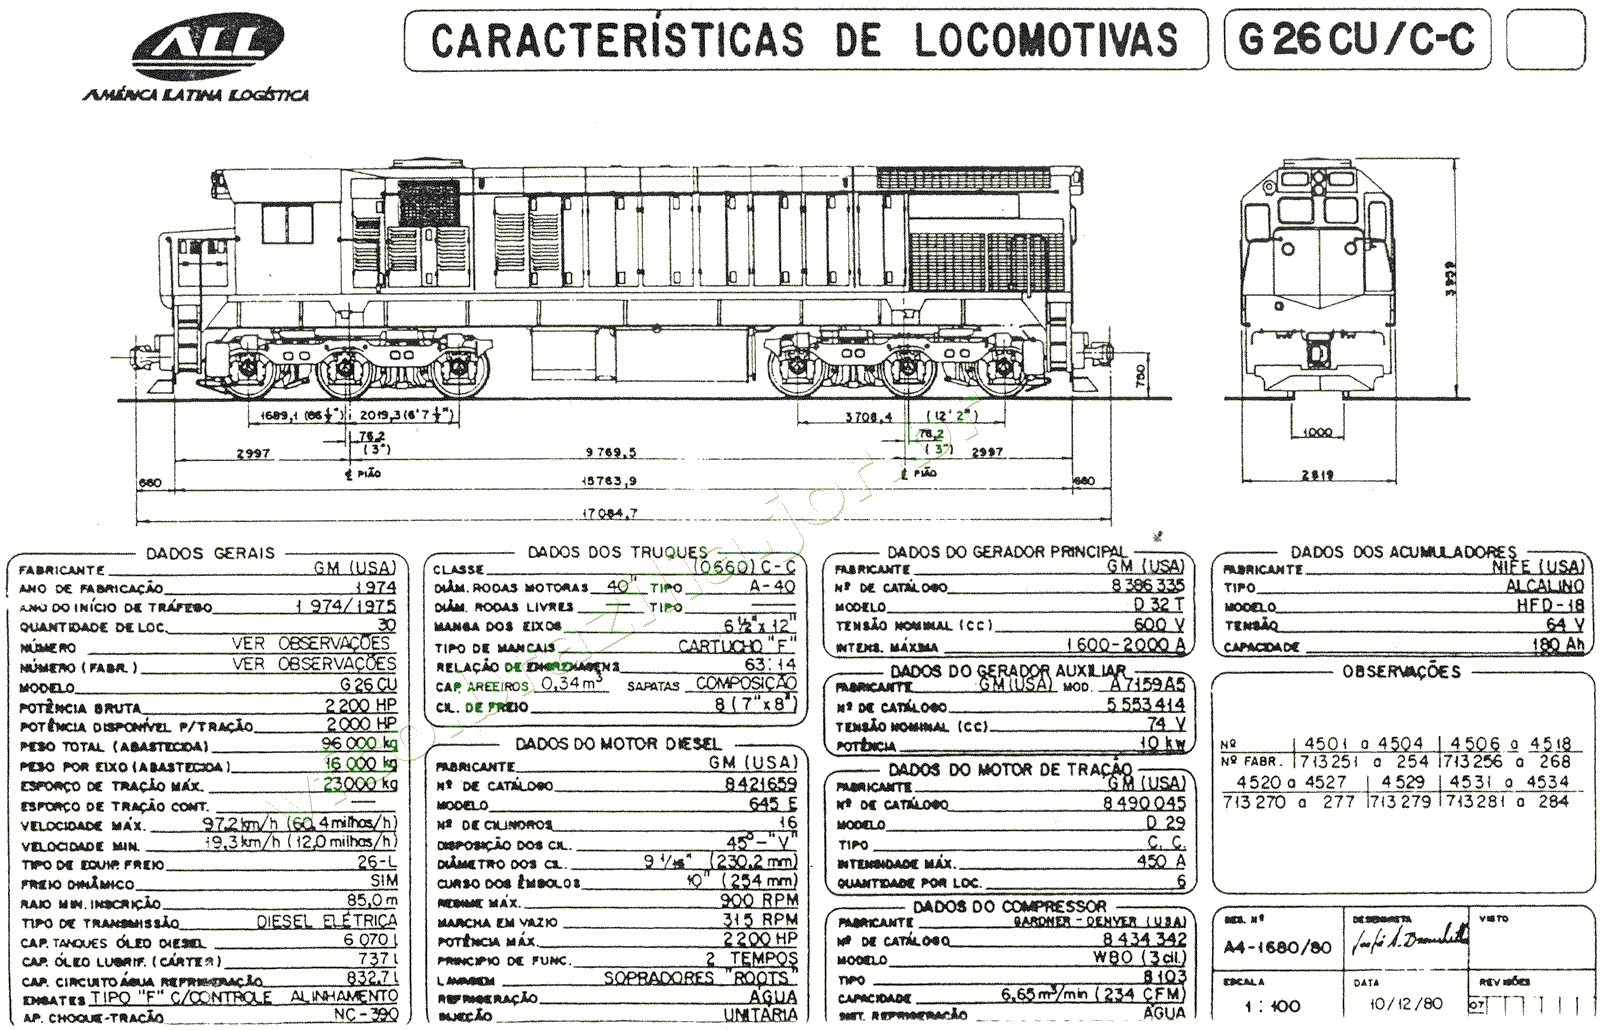 Medidas e especificações da Locomotiva G26CU da ferrovia ALL